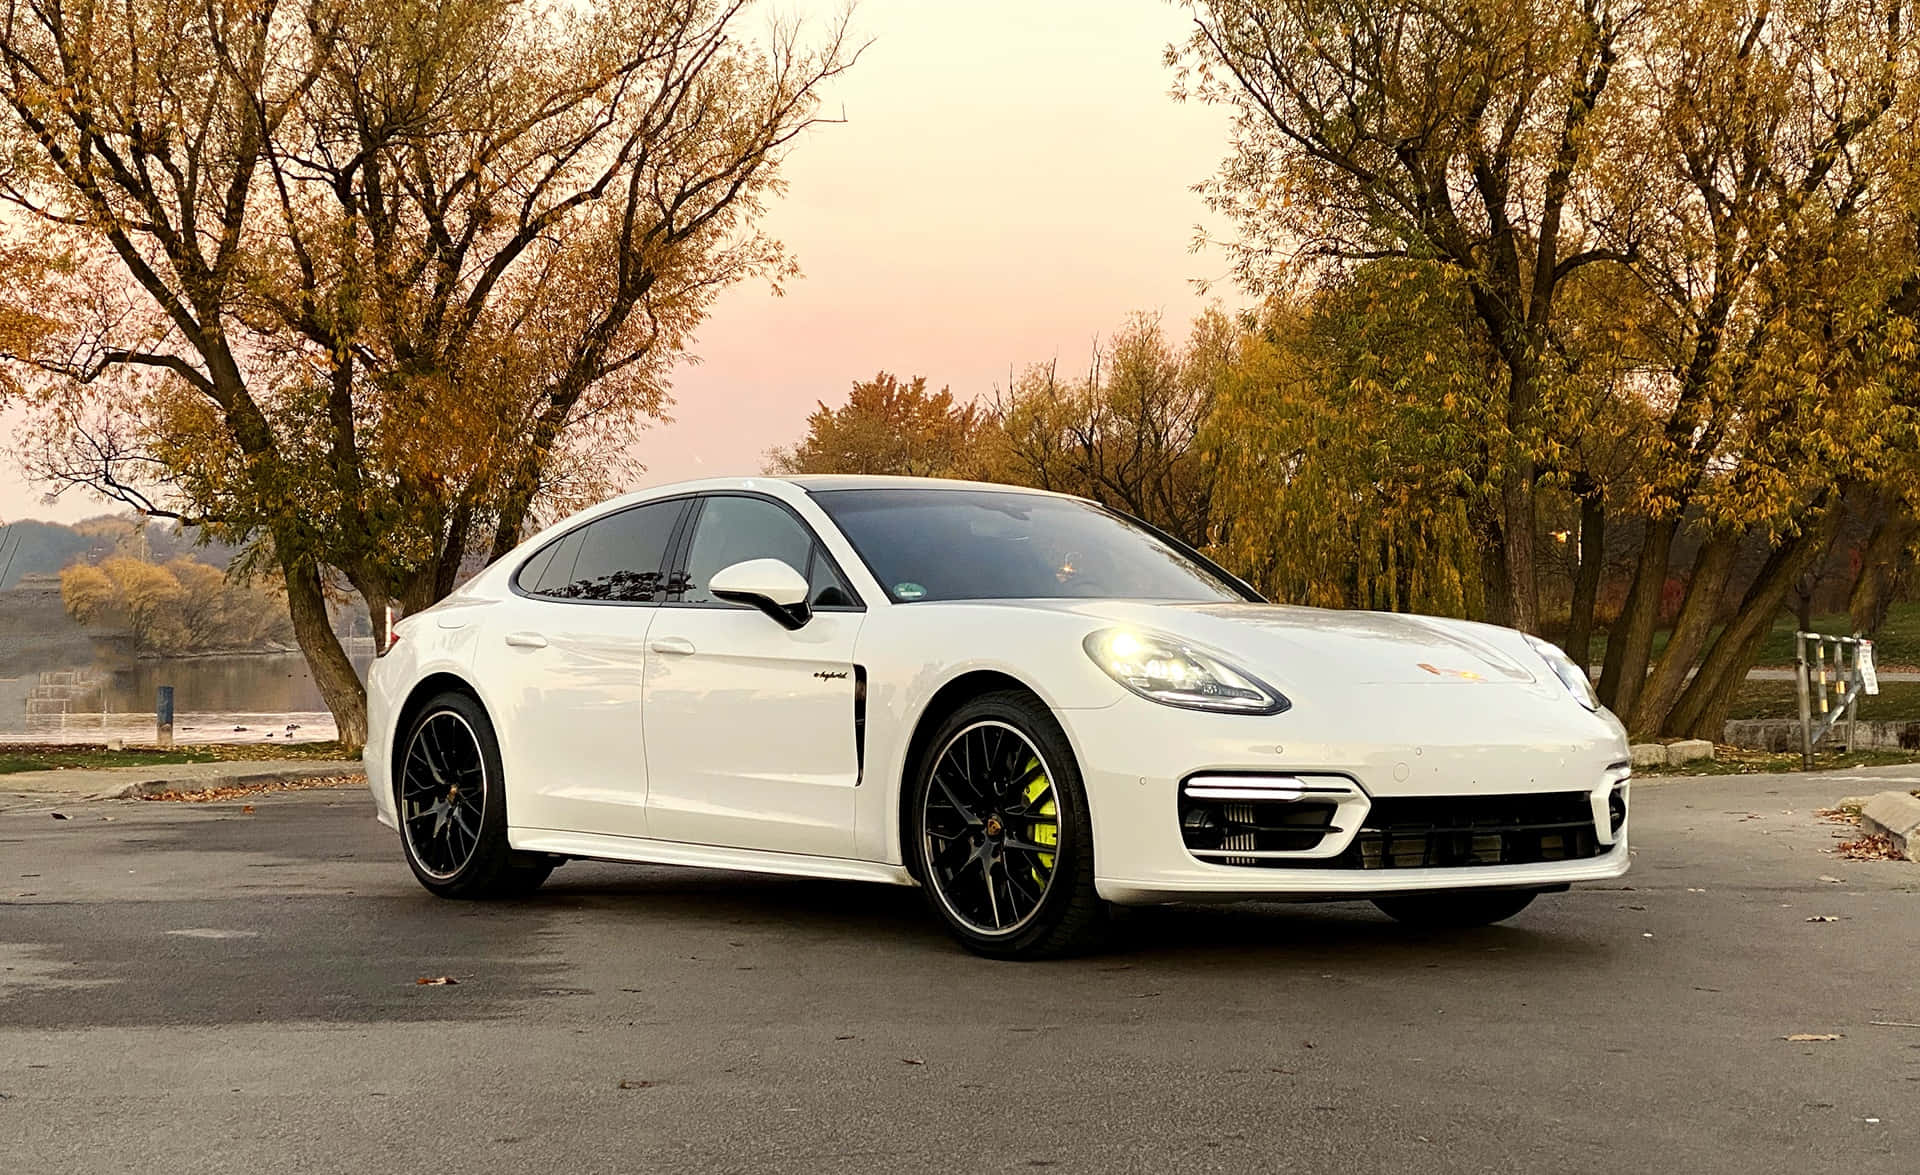 Caption: Sleek And Luxurious Porsche Panamera Wallpaper